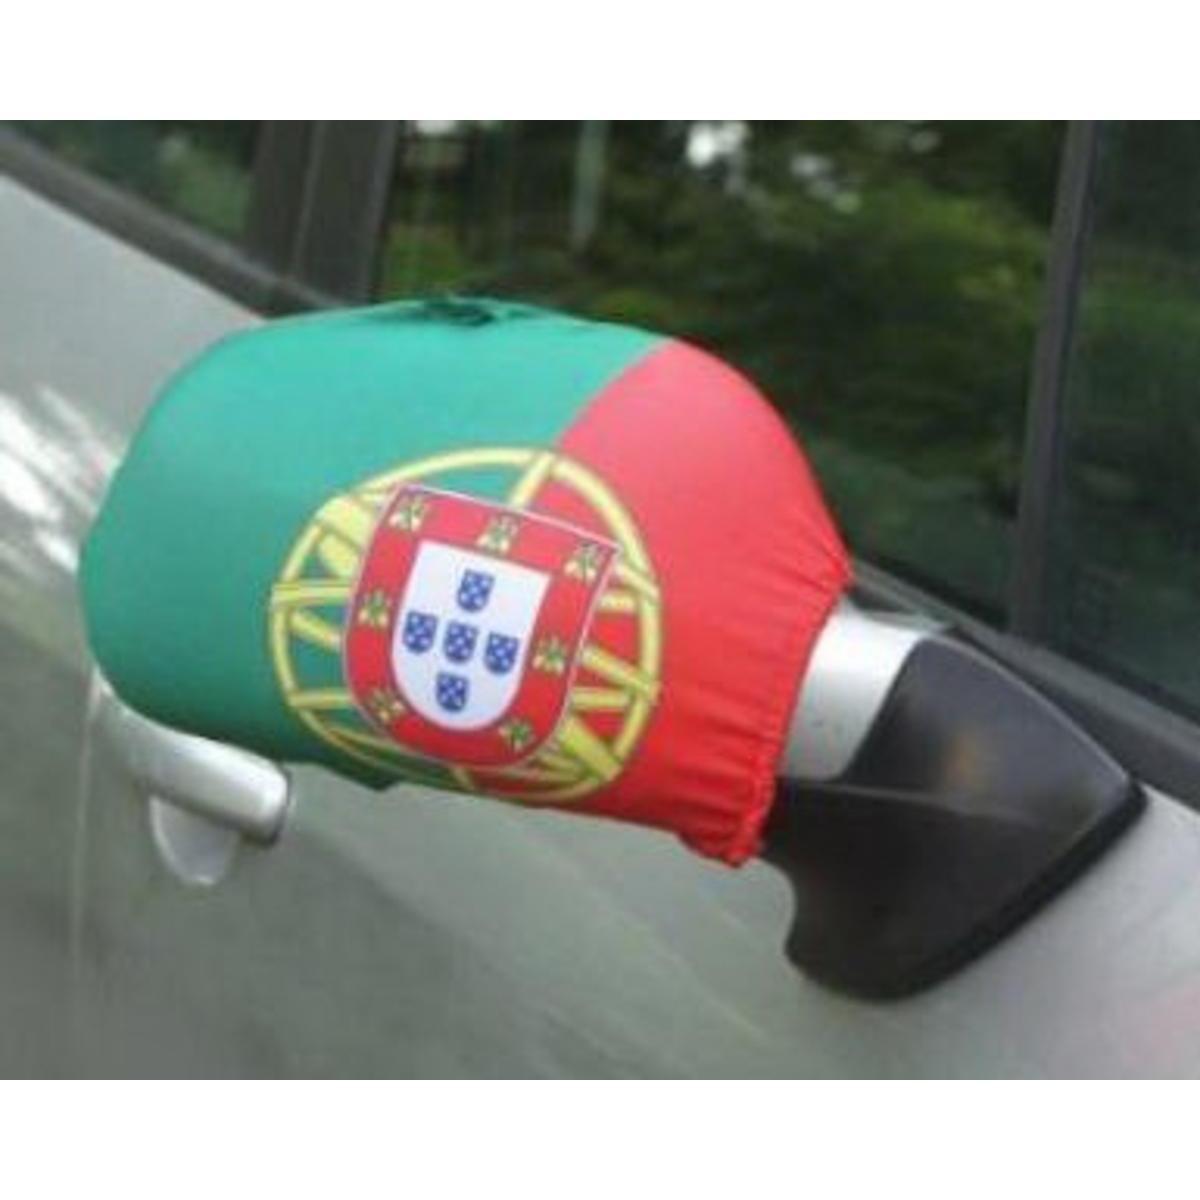 Housse de rétroviseur supporter du Portugal - L 25 x l 24 cm - Vert, rouge